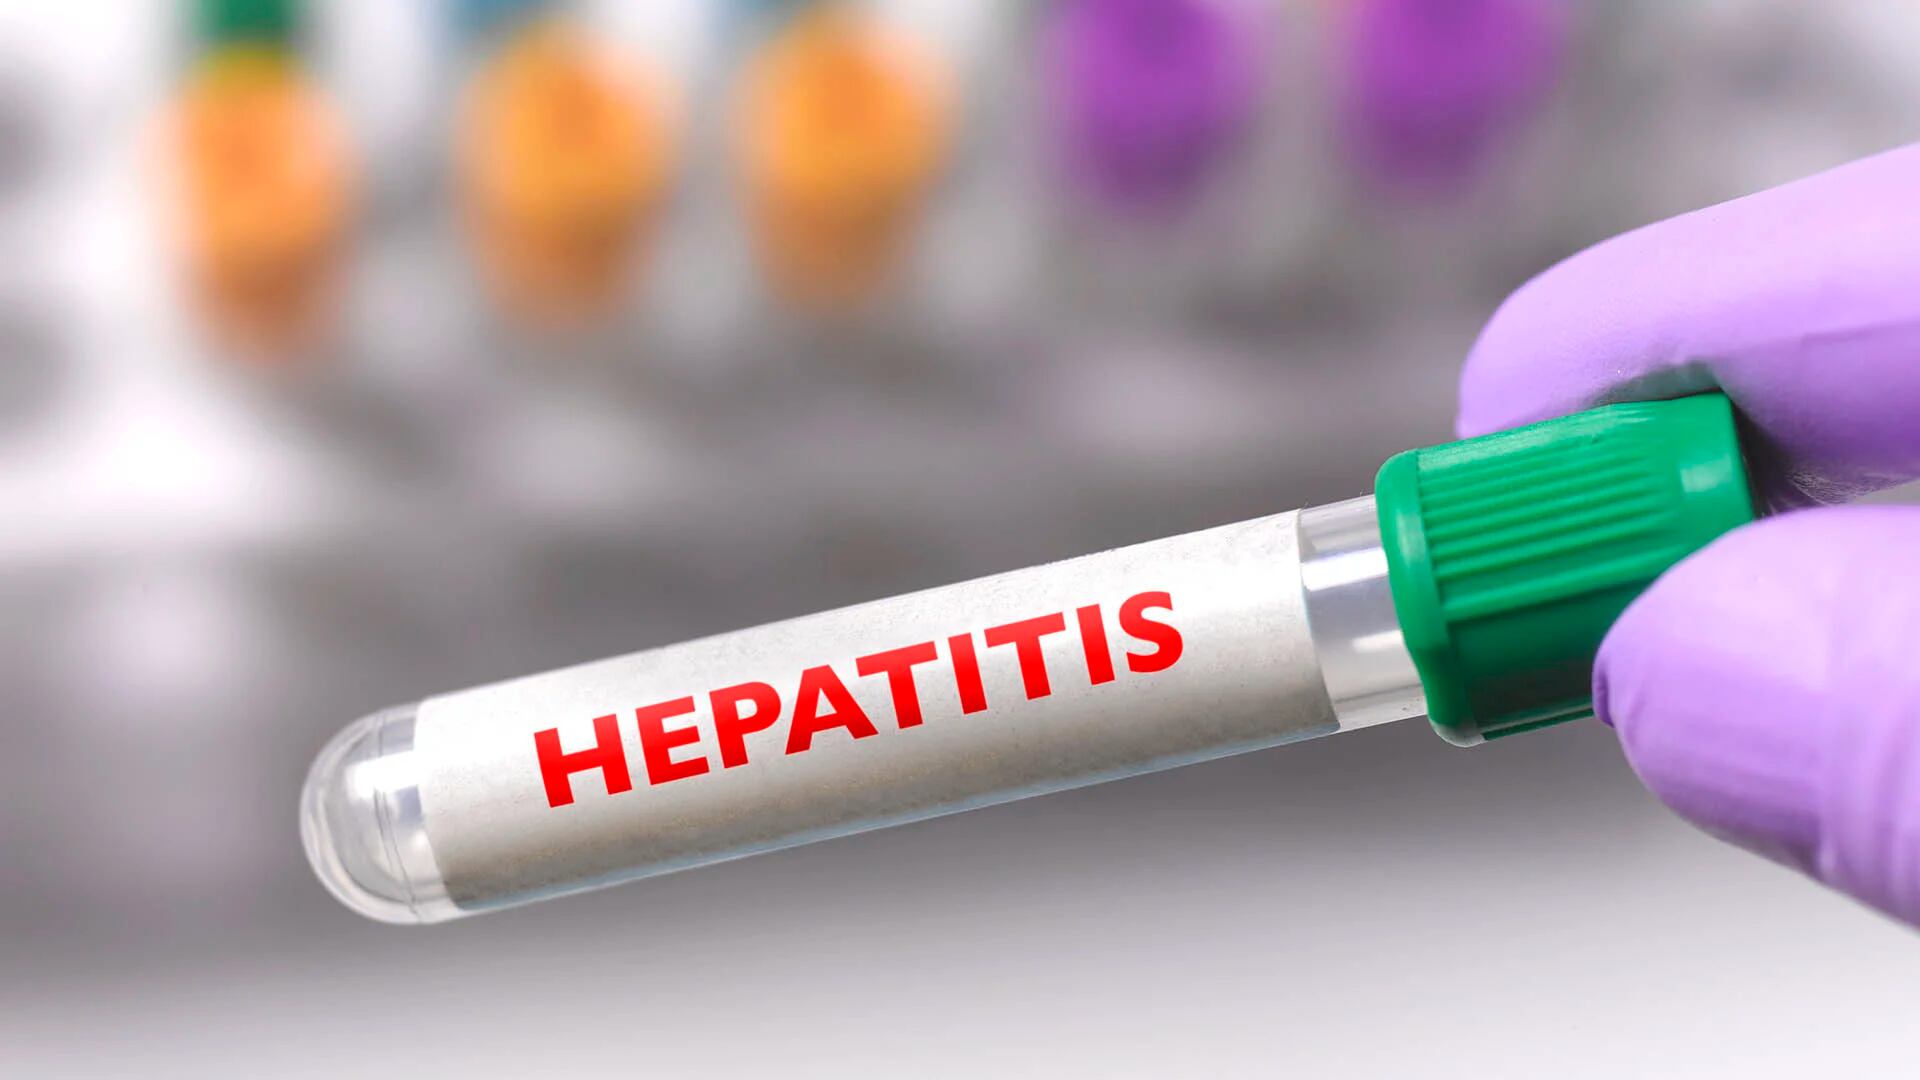 Se registró también un brote de hepatitis aguda grave de origen desconocido. Aún se investiga por qué ocurrió (Getty Images)